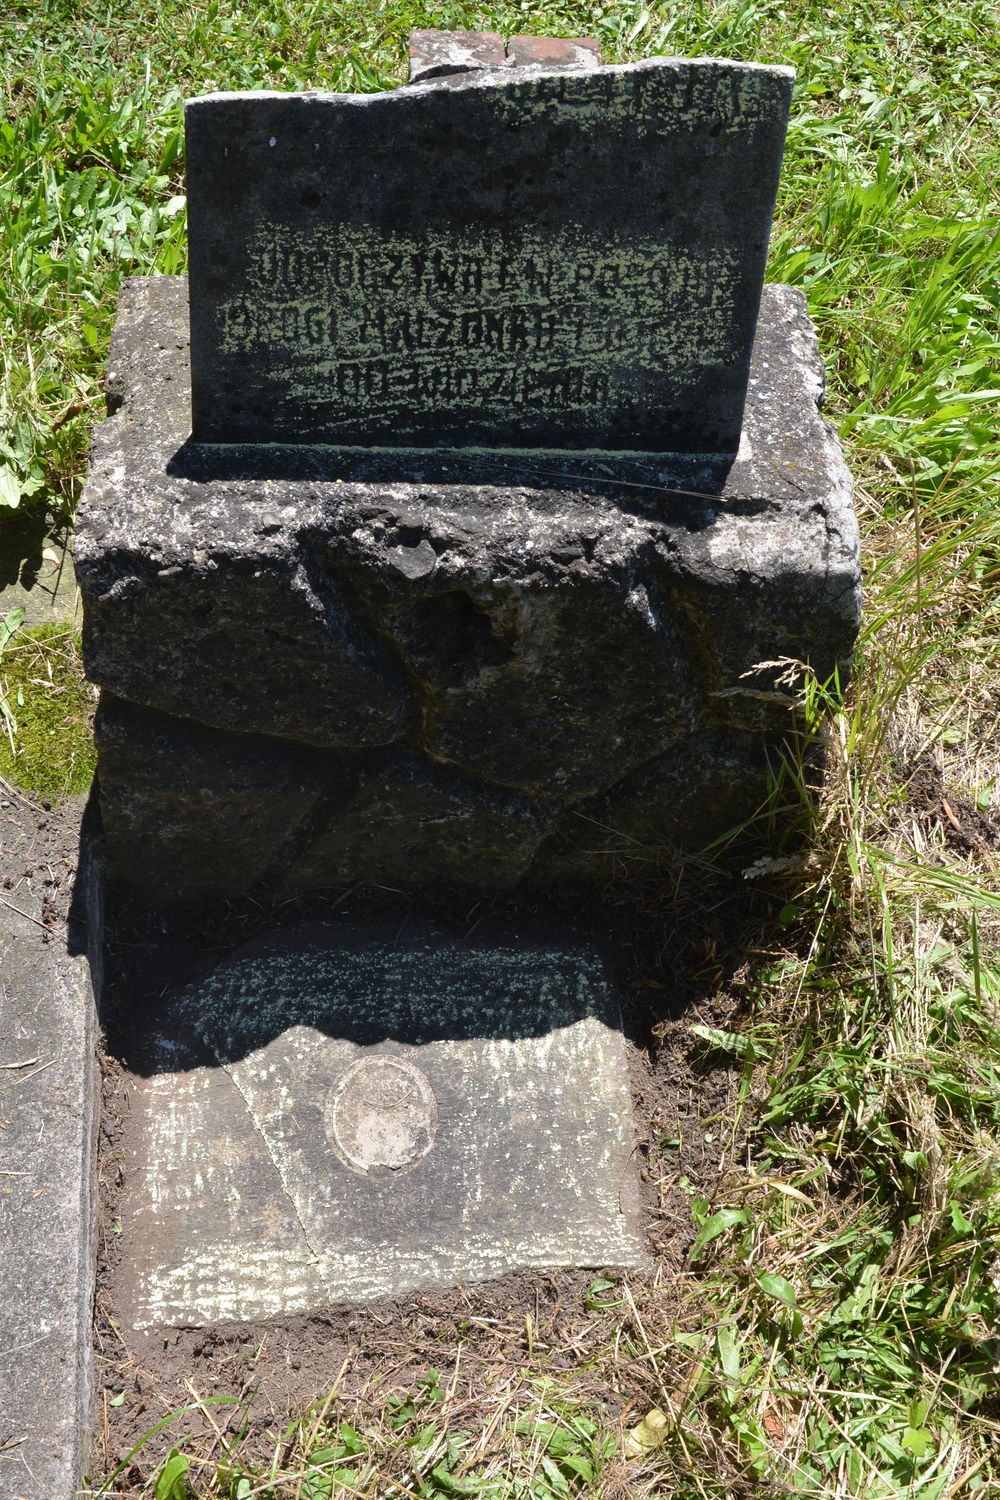 Tombstone of N.N., Karviná Doly cemetery